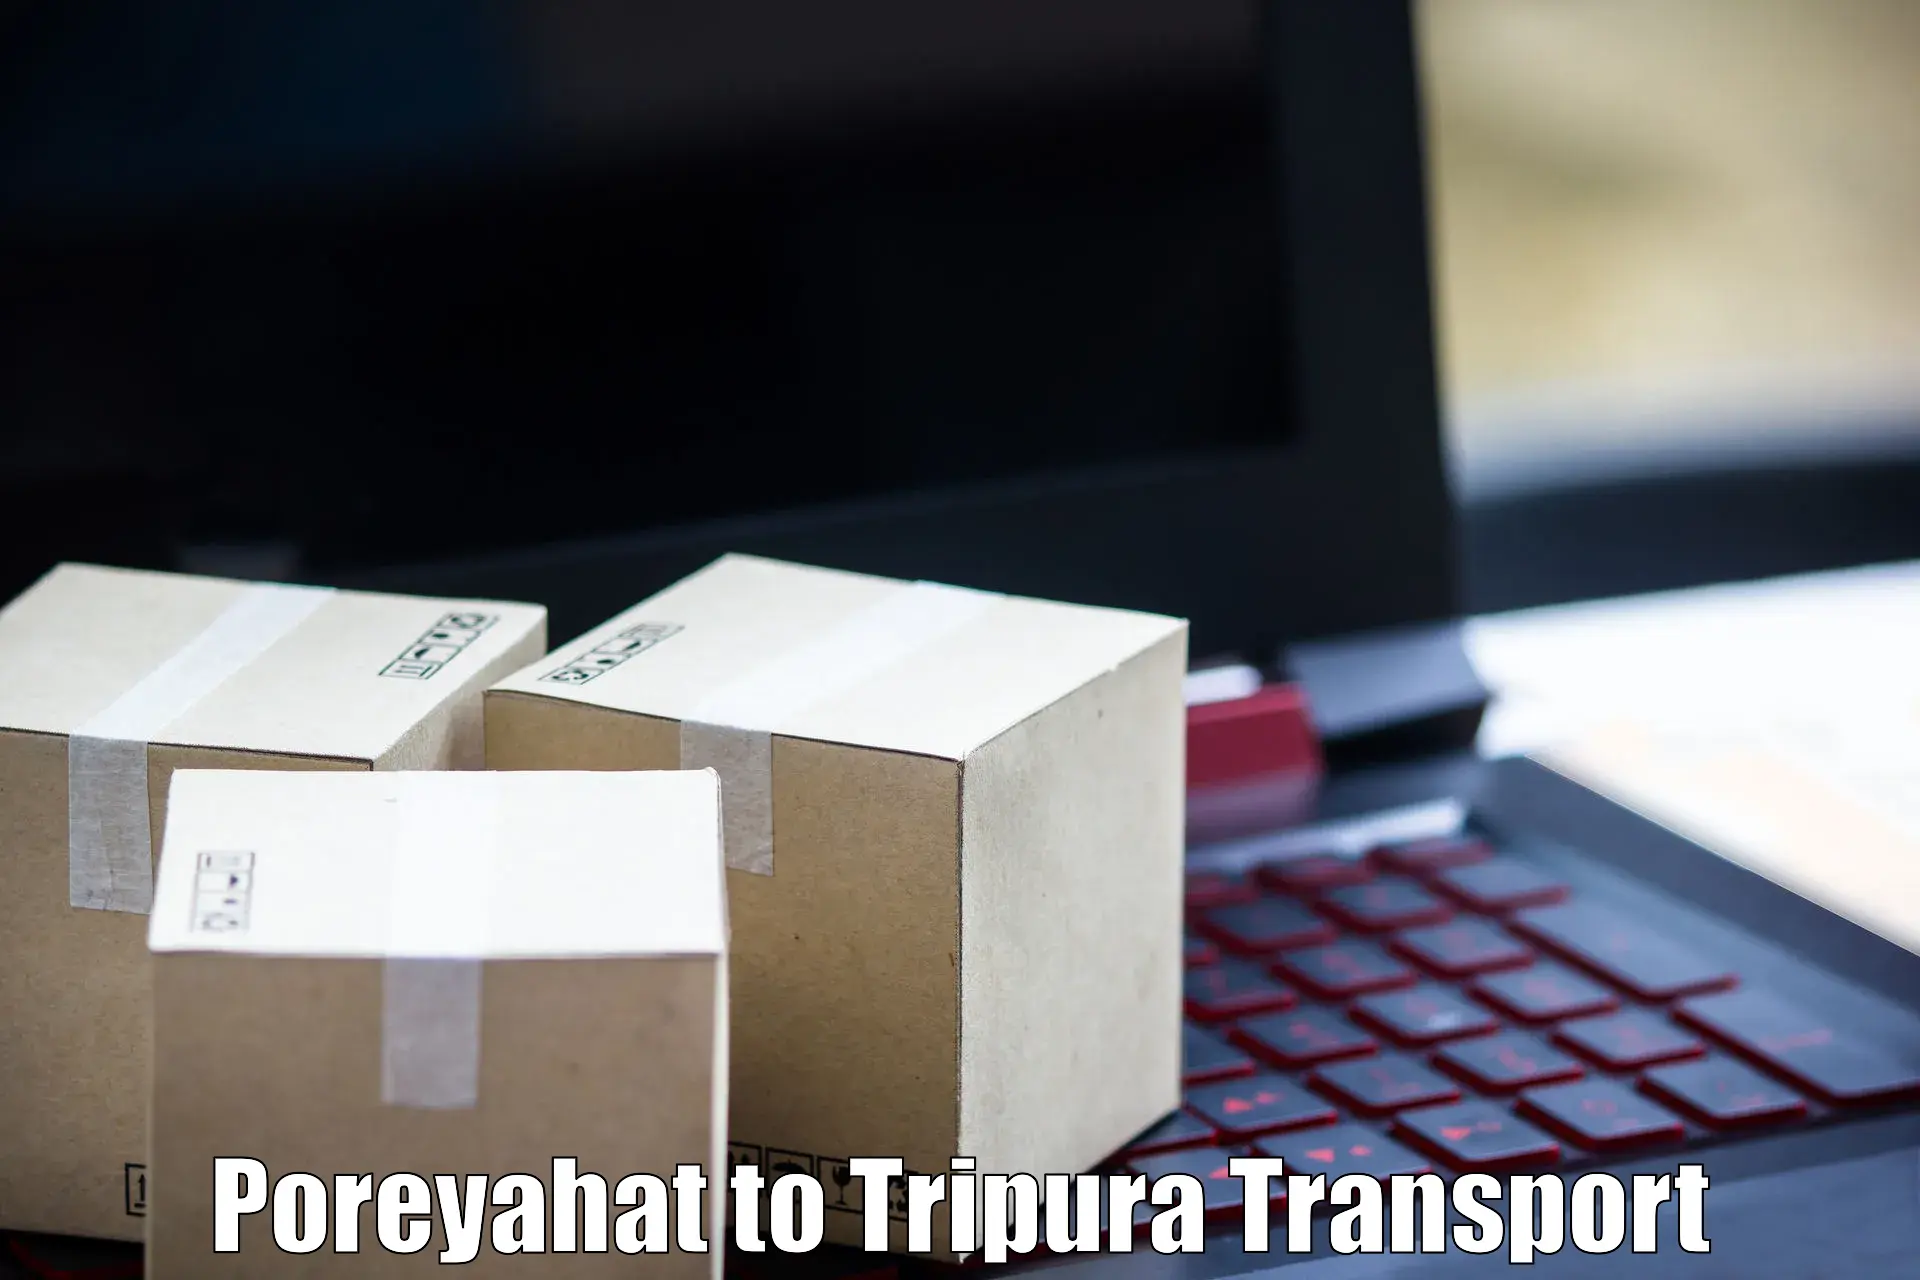 Parcel transport services Poreyahat to Sonamura